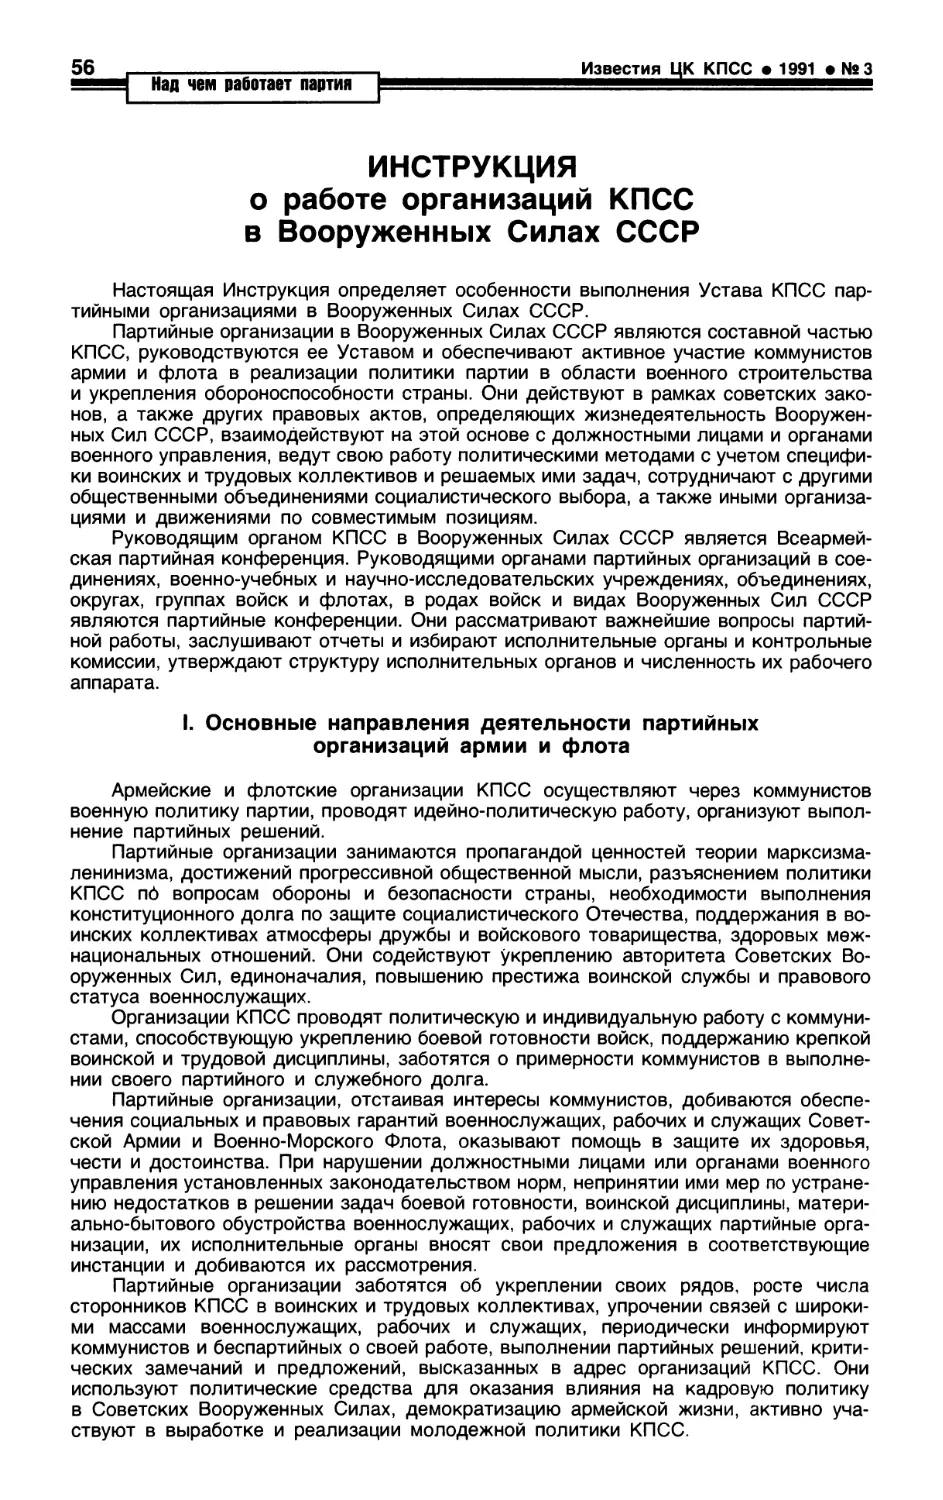 Инструкция о работе организаций КПСС в Вооруженных Силах СССР